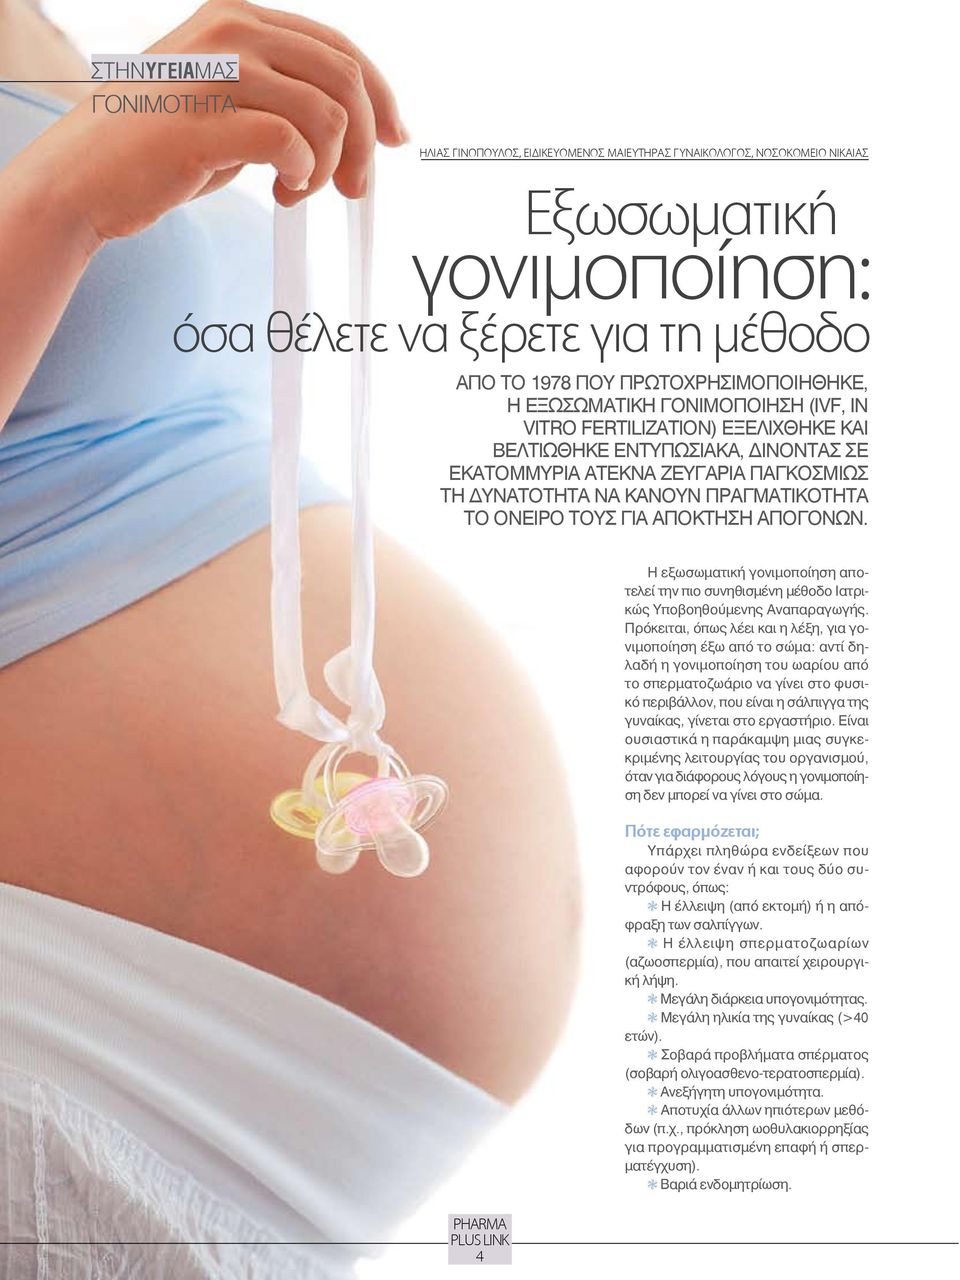 ΤΟΥΣ ΓΙΑ ΑΠΟΚΤΗΣΗ ΑΠΟΓΟΝΩΝ. 4 Η εξωσωματική γονιμοποίηση αποτελεί την πιο συνηθισμένη μέθοδο Ιατρικώς Υποβοηθούμενης Αναπαραγωγής.